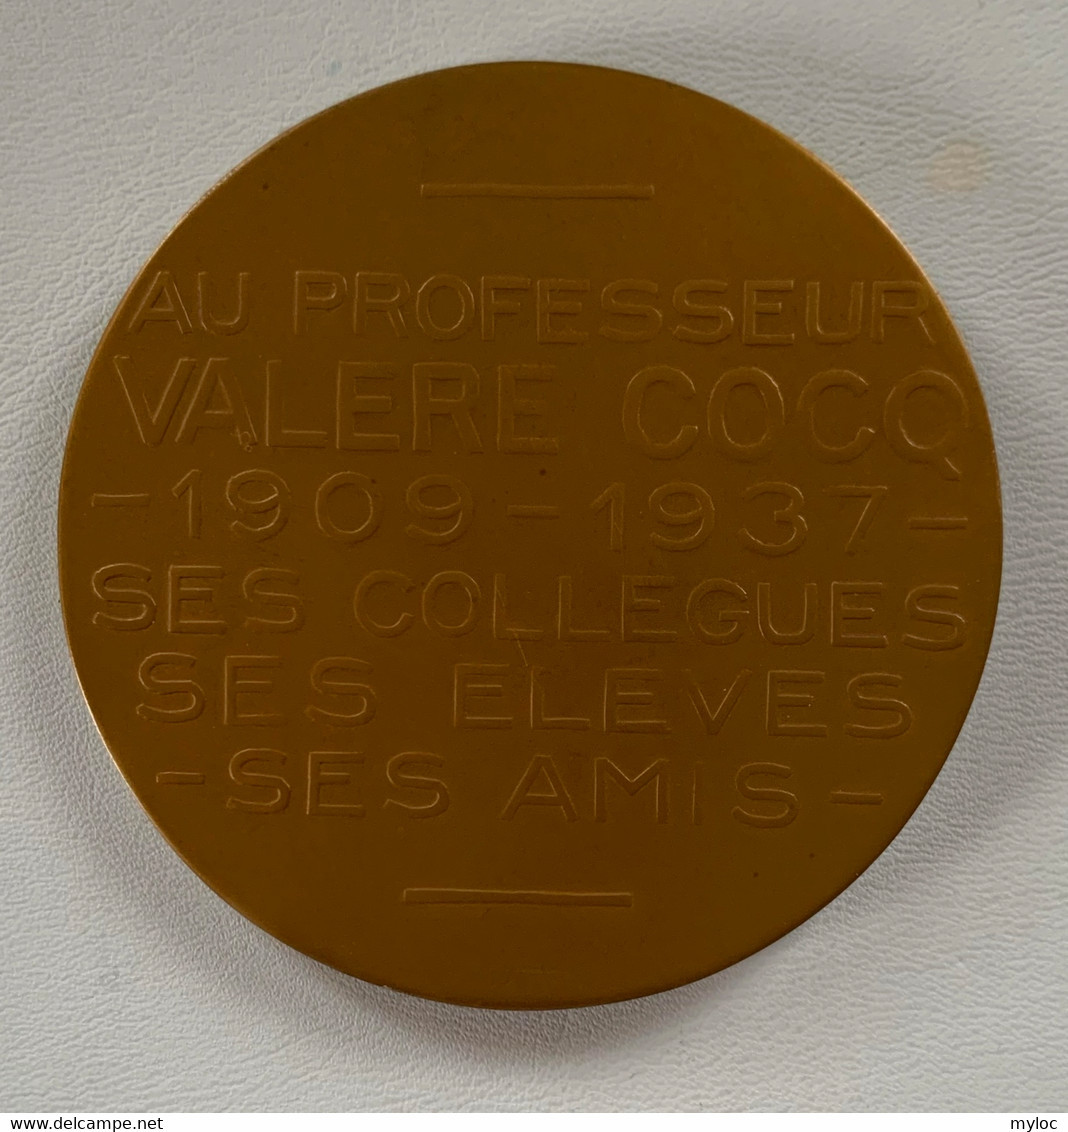 Médaille Bronze. Valère Cocq. Au Professeur Valère Cocq 1909-1934. Ses Collègues, Ses élèves, Ses Amis. A. Bonnetain - Professionali / Di Società